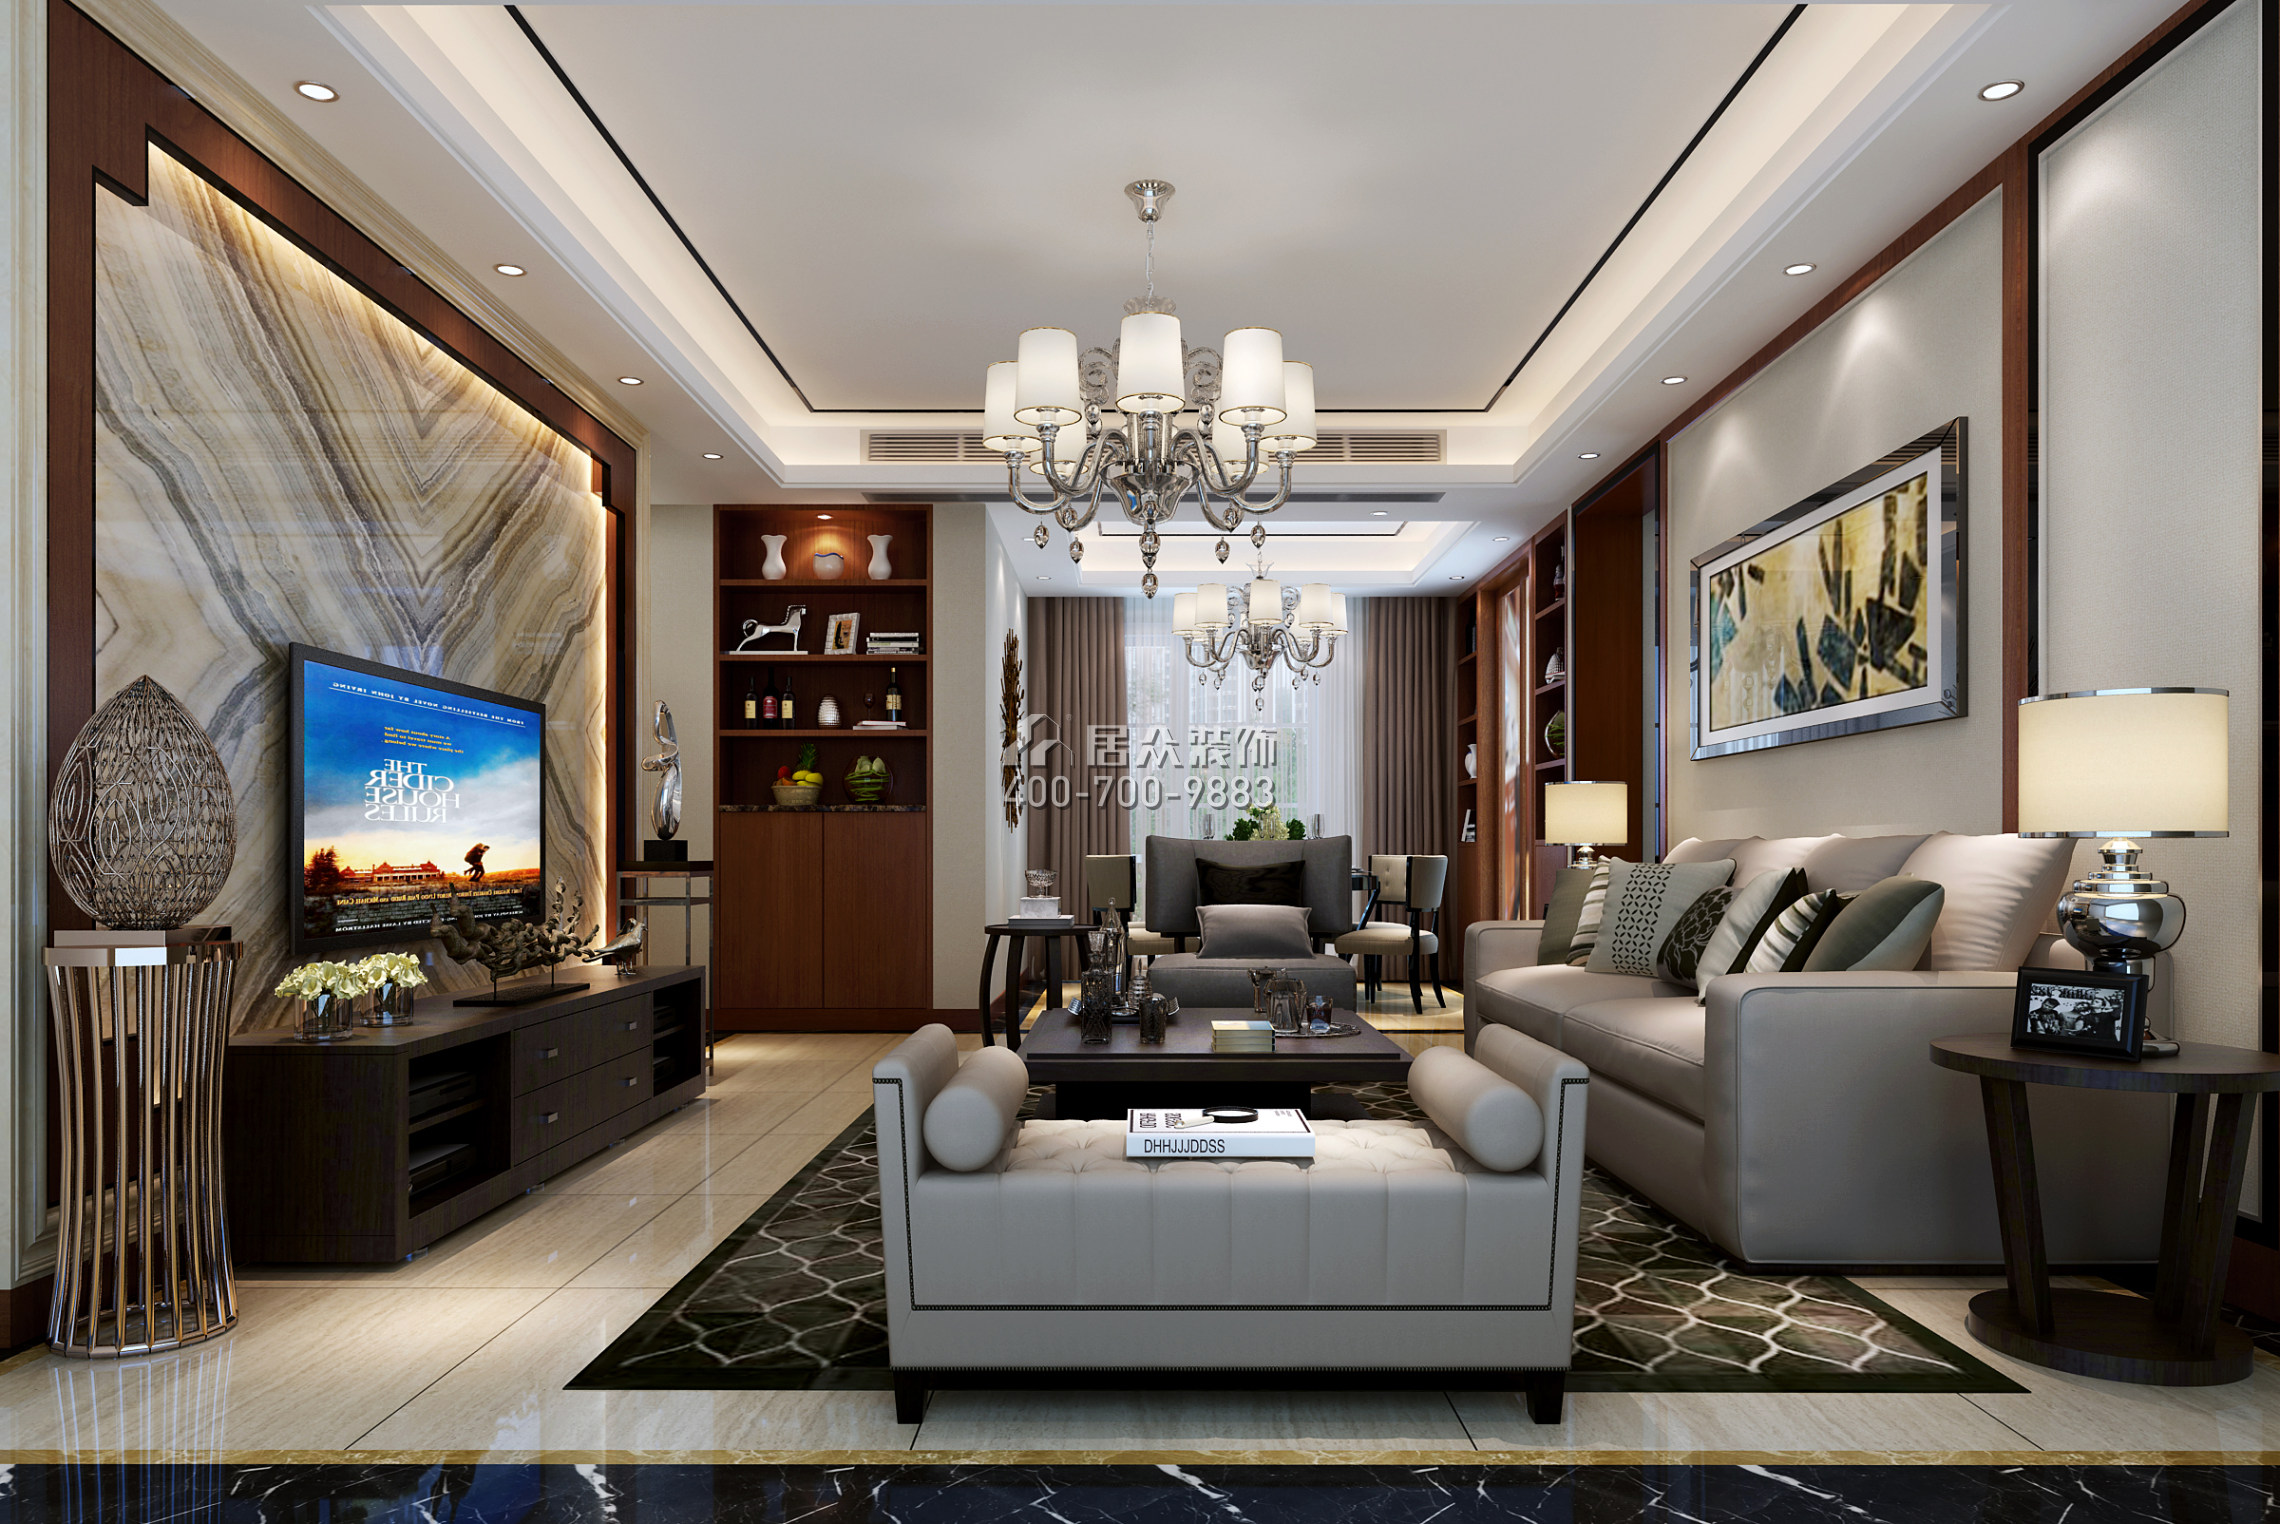 同和悦园139平方米中式风格平层户型客厅装修效果图